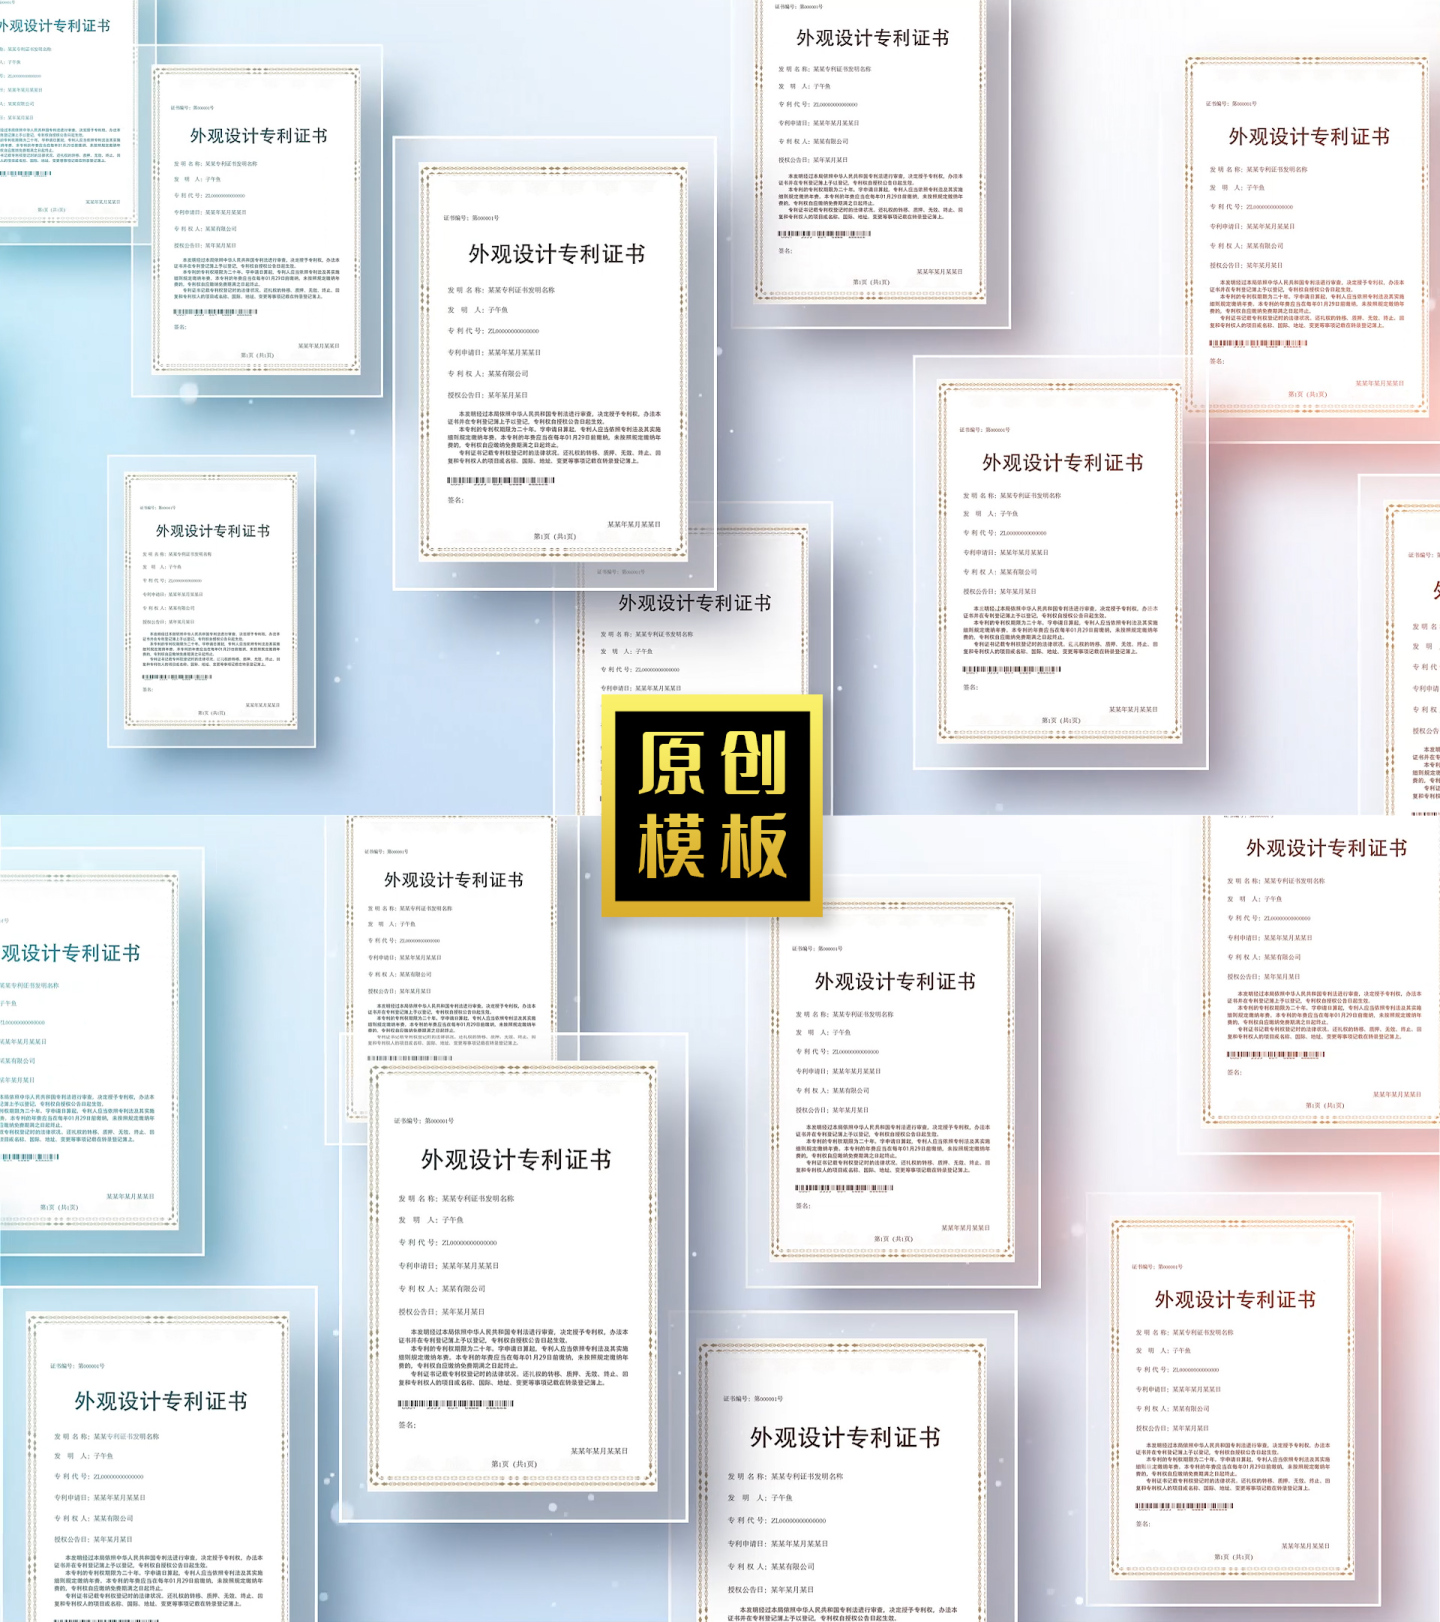 企业荣誉墙专利展示证书多图包装